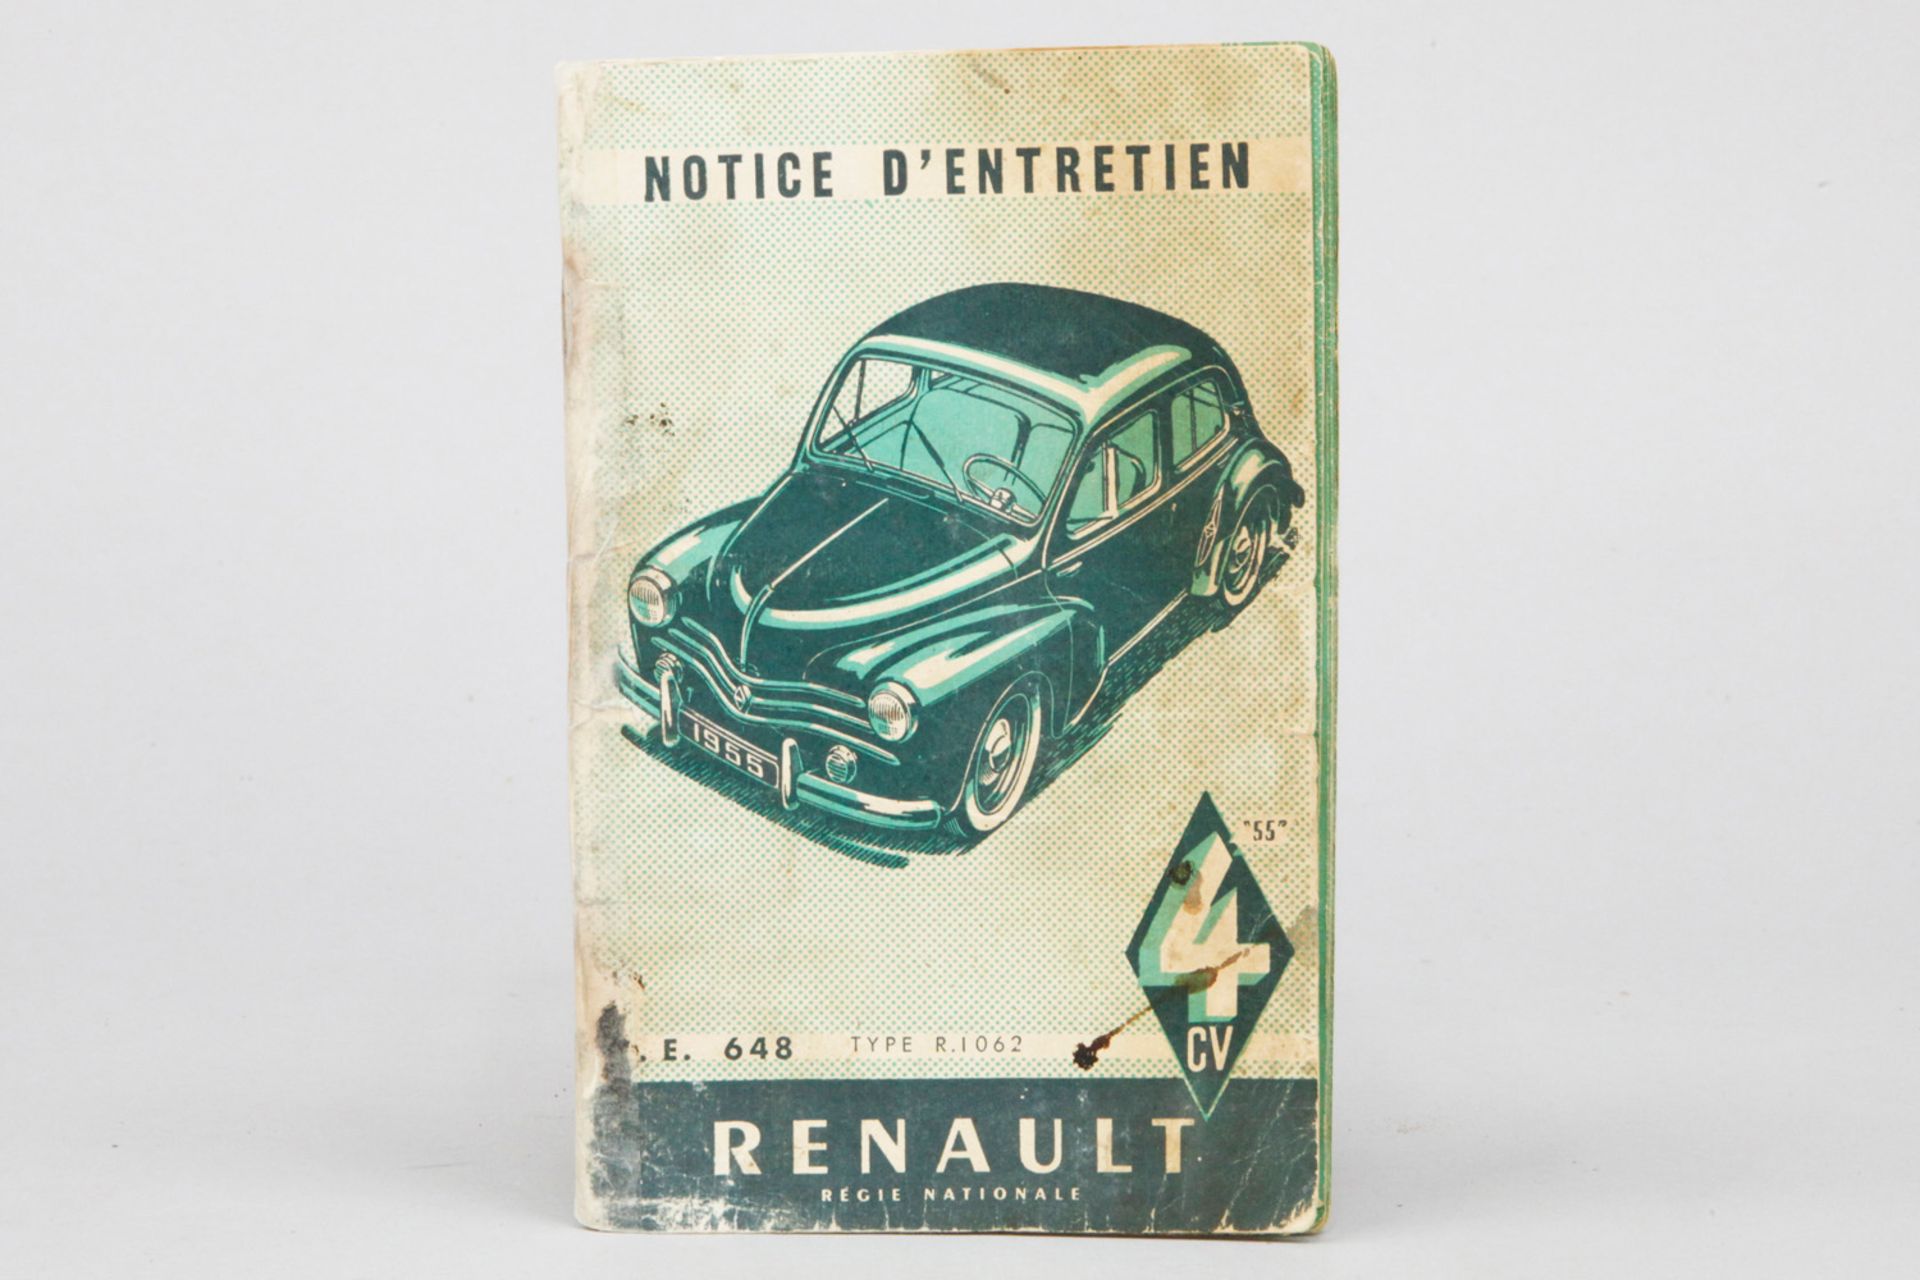 Betriebsanleitung "Renault 4 CV",1955, E. 648 Type R.1062, 40 Seiten, französisch, fleckig